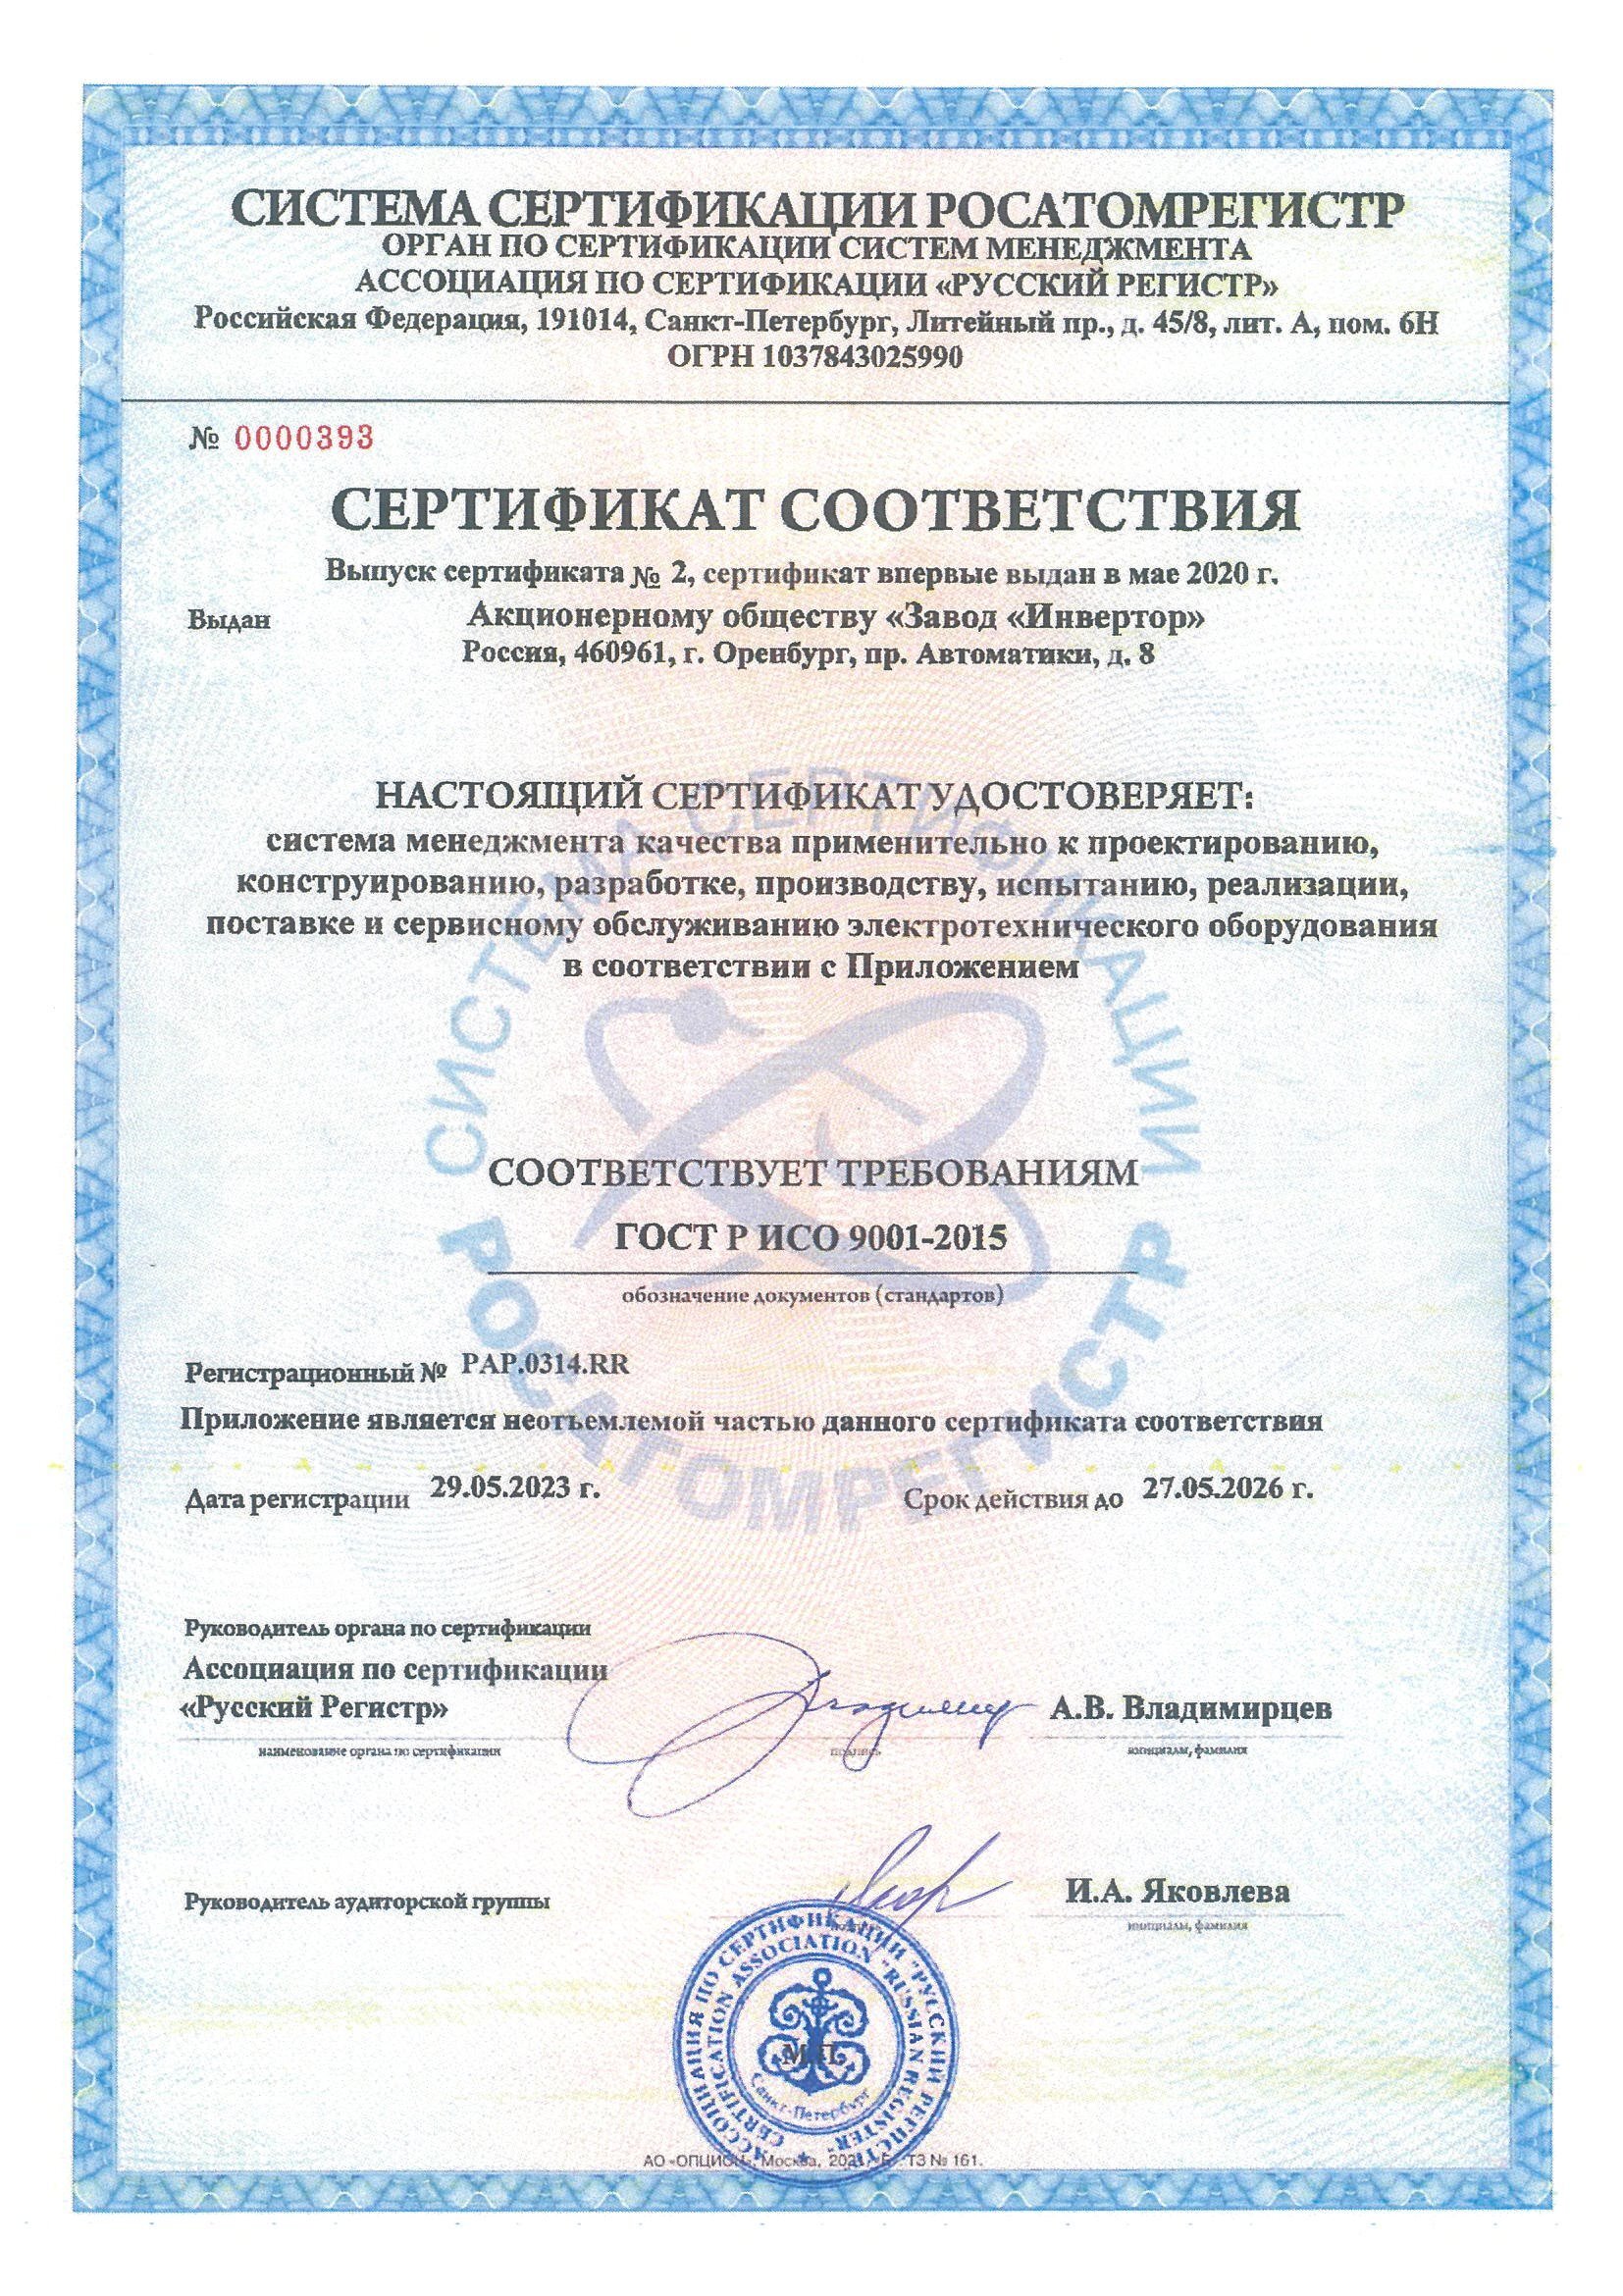 Сертификат ГОСТ Р ИСО 9001 в системе сертификации РОСАТОМРЕГИСТР